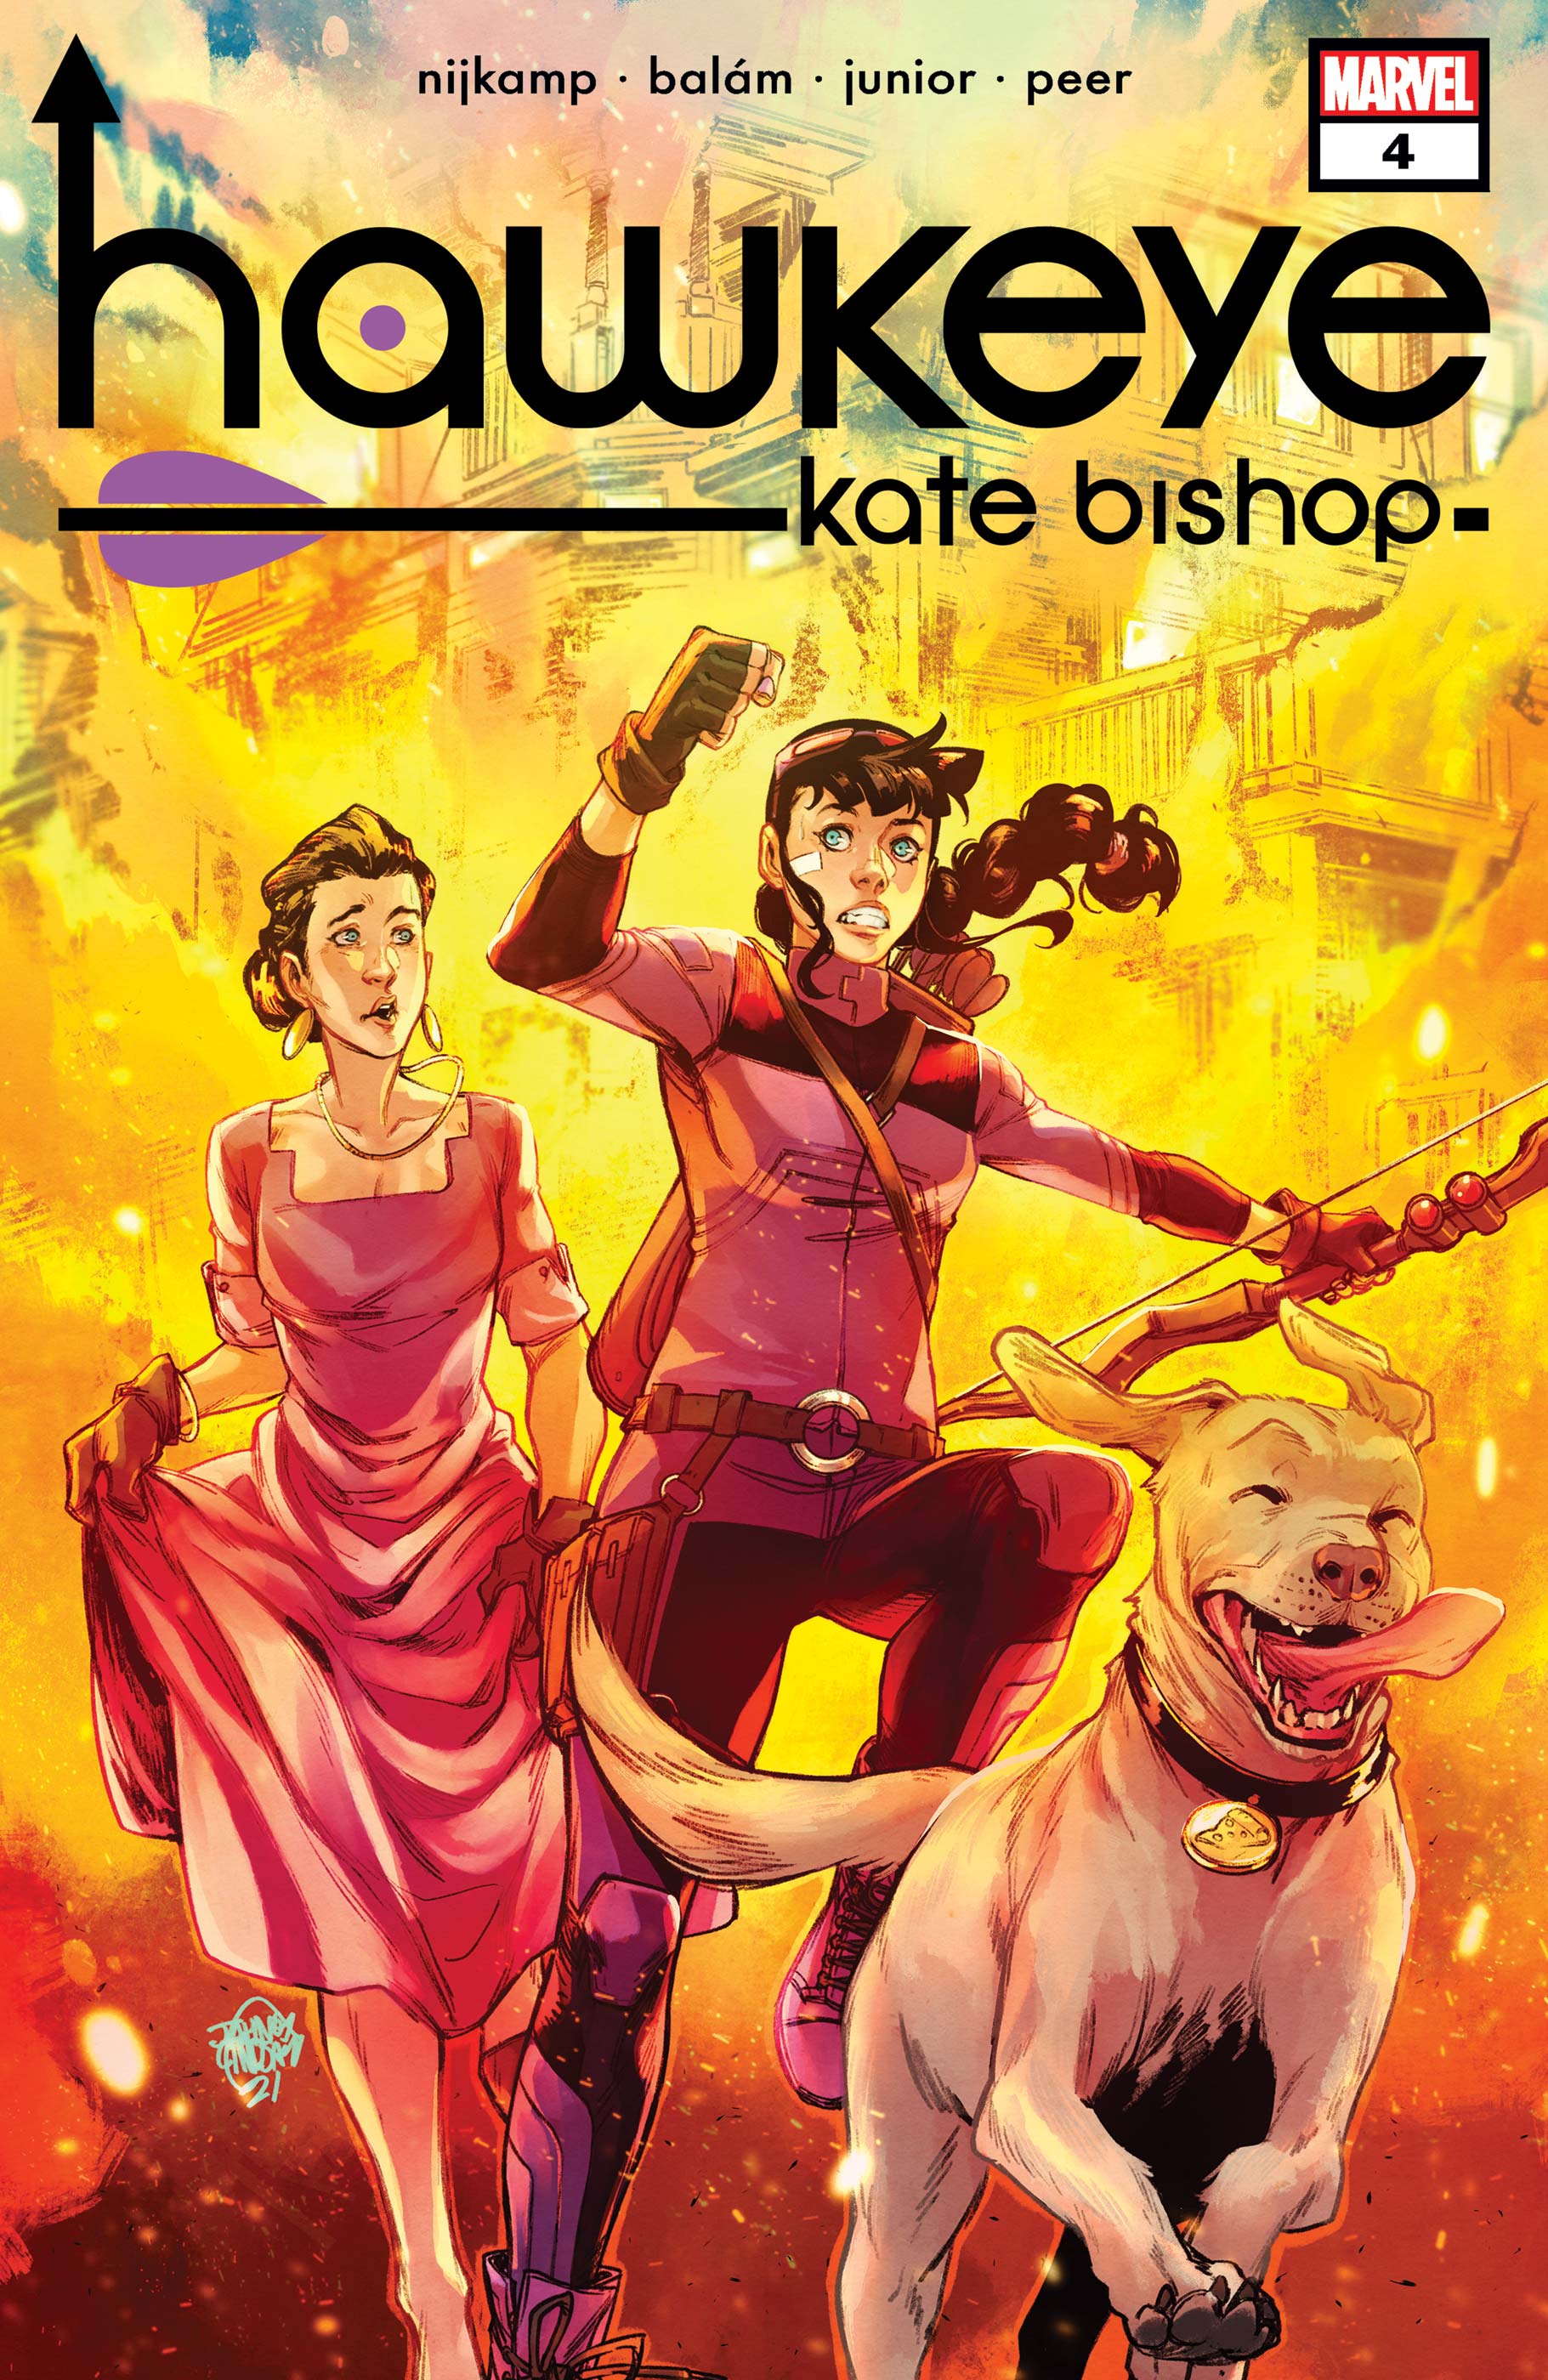 Bishop kate Hawkeye: Kate